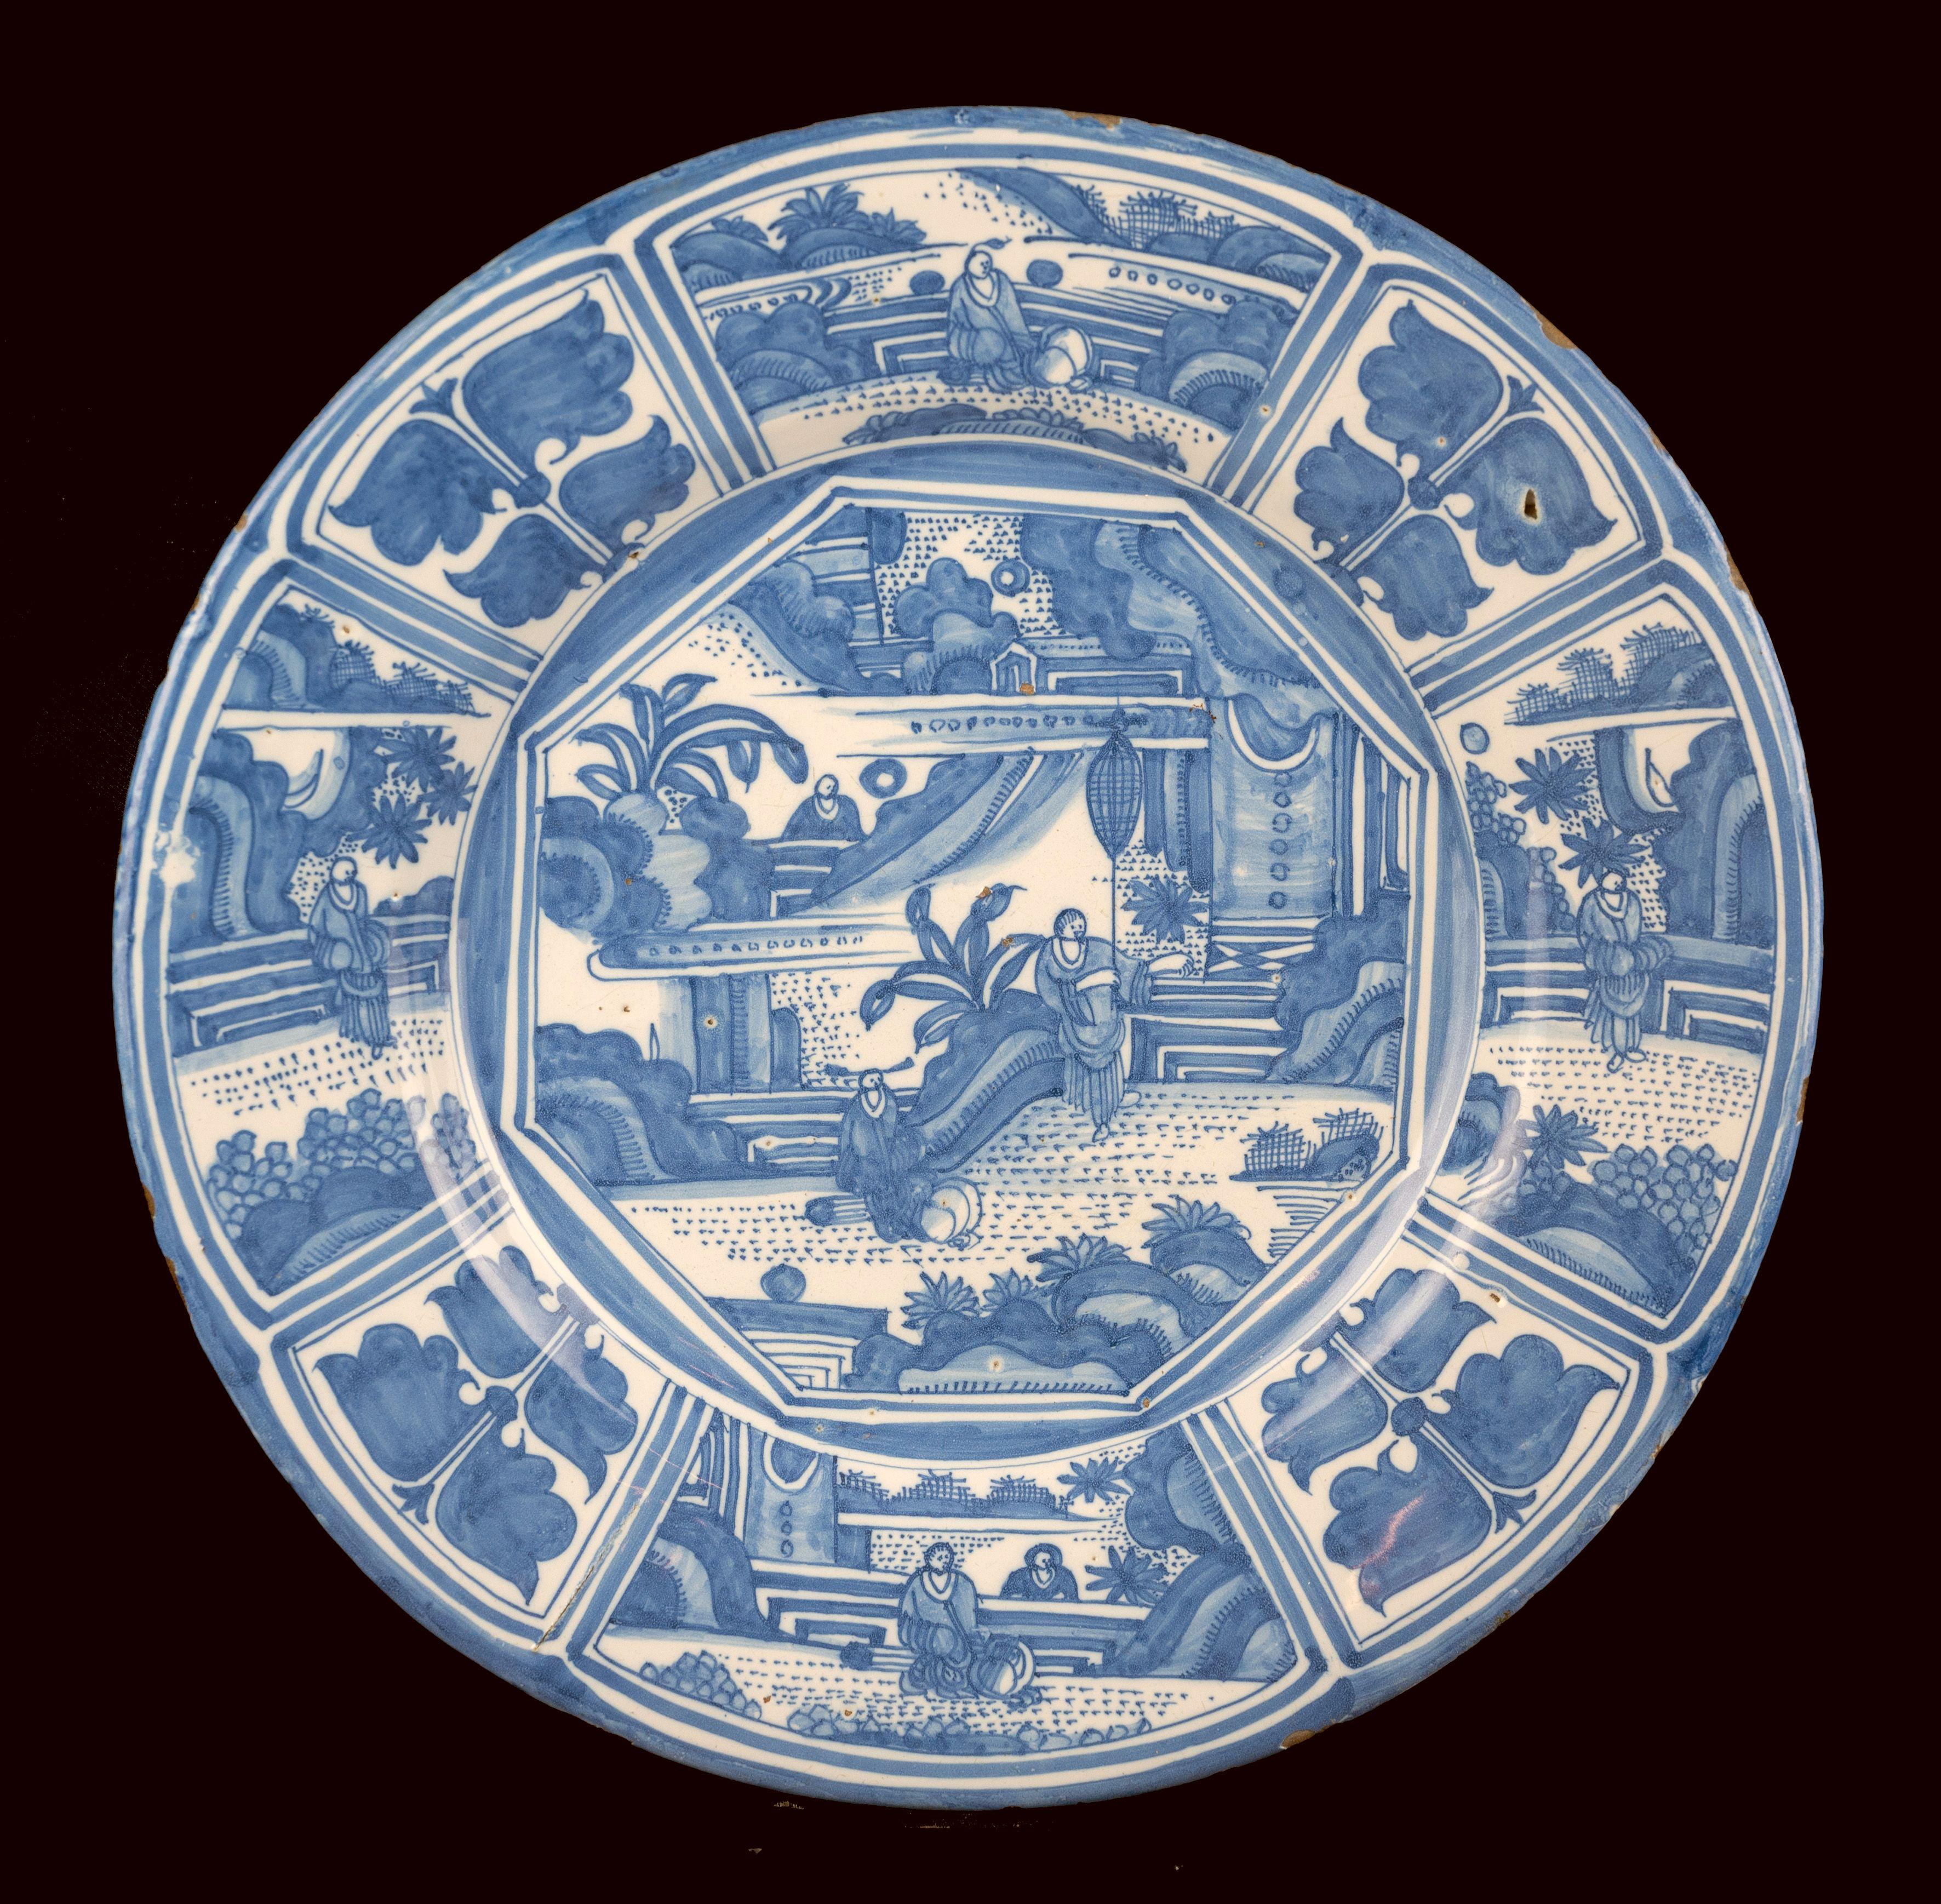 Die blau-weiße Schale hat einen weit ausladenden Flansch und ist in der Mitte mit zwei chinesischen Figuren auf einer Terrasse neben einem Pavillon in einer orientalischen Gartenlandschaft bemalt. Ein dritter Chinese ist im Hintergrund zu sehen. Die